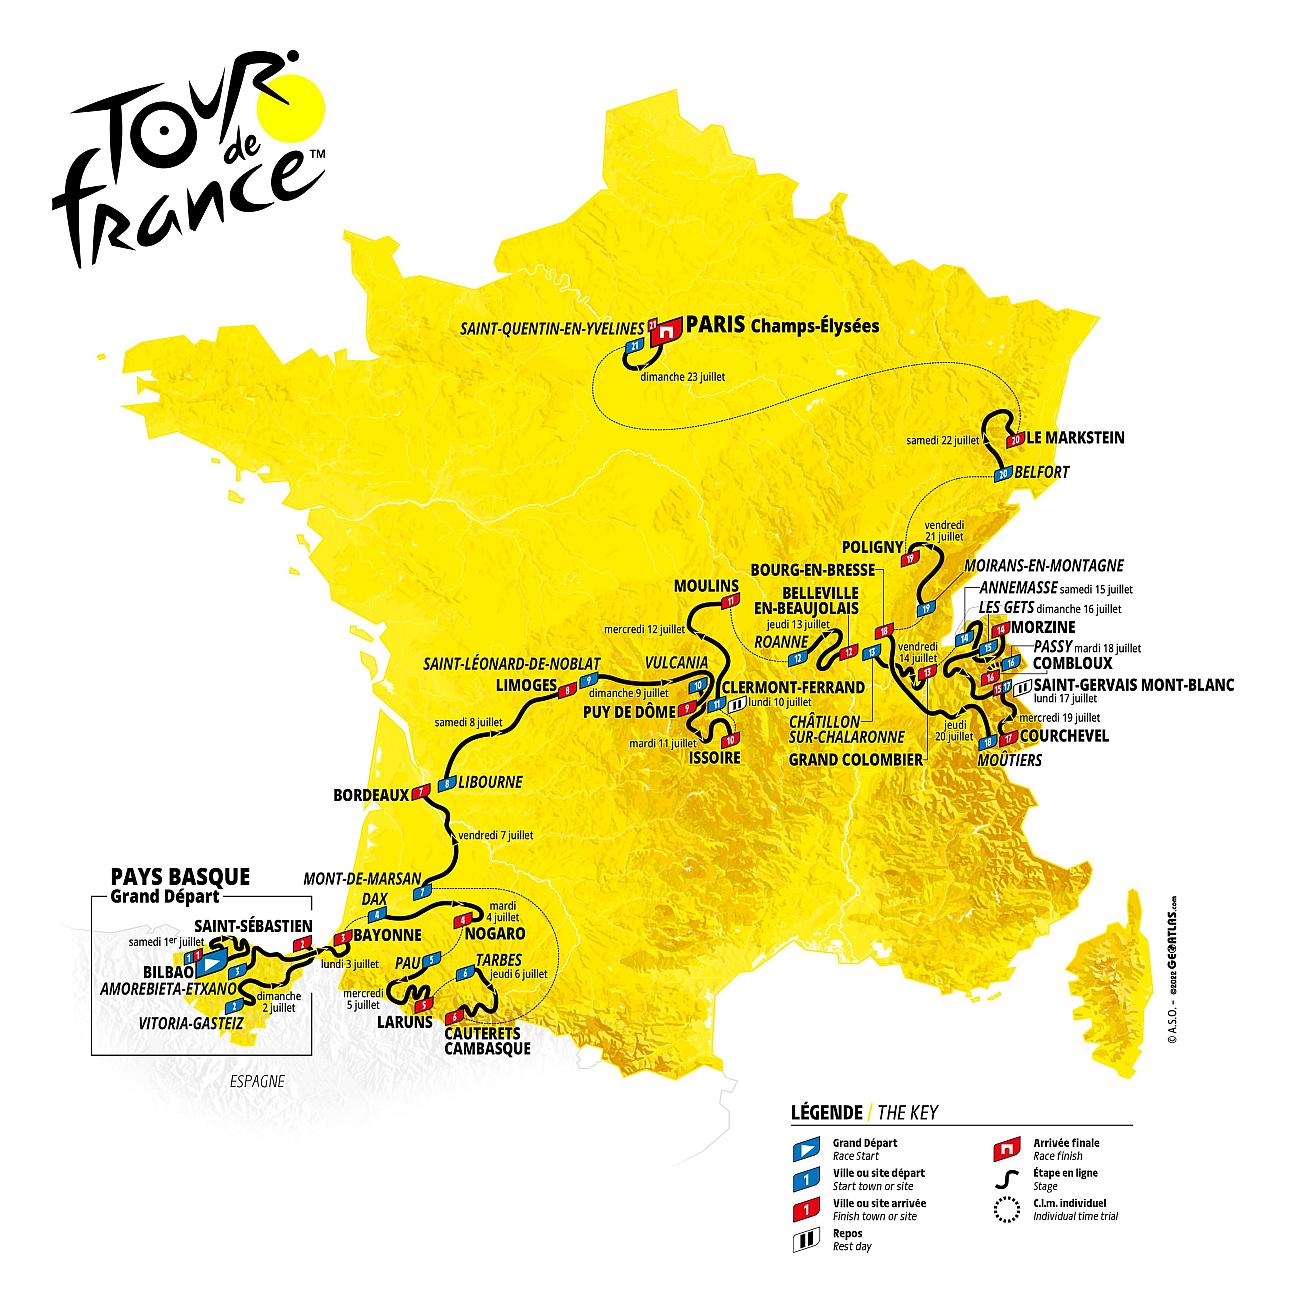 Tour de France #TDF2023, comment s'entraînent les pros ? 450 heures d'entraînement, 188.720 m de D+ en moyenne sur les 6 premiers mois de 2023